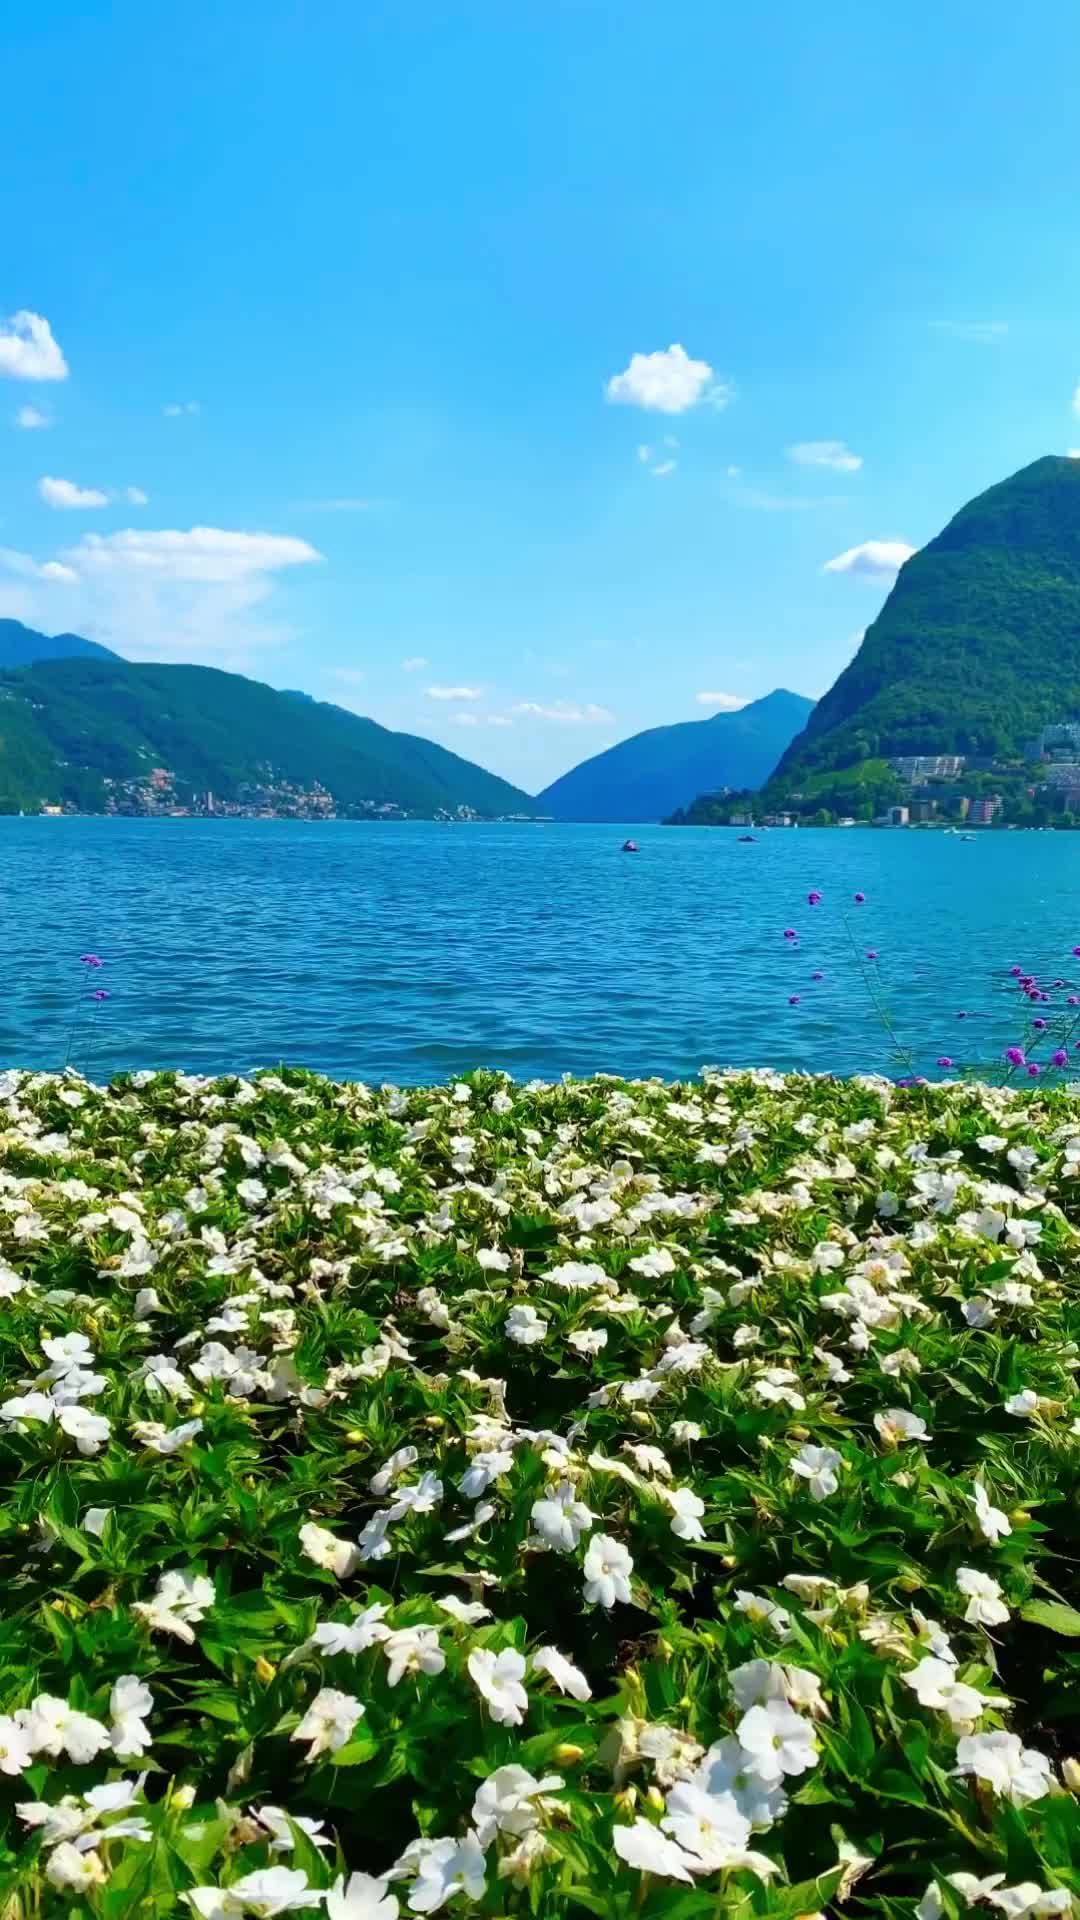 🇬🇧🇮🇩⬇️ LUGANO🇨🇭BEST PHOTO LOCATION 

❤️Follow @syifa_in_switzerland for your Swiss inspirations 

❤️Save & share this video for your Swiss future trip

🇬🇧⬇️🇮🇩Ini adalah pemandangan danau Lugano yang terletak di Kanton Ticino, Swiss.

🌸Kanton di Swiss yang berbahasa Italia

🌸Lugano merupakan kota terbesar di Kanton Ticino

🌸Lokasi: Parco Ciani, Taman Tepi Danau dengan taman & pemandangan

🌸Lokasi persis video: di dekat Cancello sul lago di Lugano

 🌸Waktu terbaik untuk berkunjung : Waktu musim panas, video ini diambil pada awal Juli

🌸Waktu tempuh: Zurich- Lugano 2 jam dengan kereta

🇬🇧🇬🇧🇬🇧This is a view of Lake Lugano located in the Canton of Ticino, Switzerland.

 🌼Italian-speaking Swiss Canton

 🌼Lugano is the largest city in the Canton of Ticino

🌼Location: Parco Ciani, Lakefront Park with garden & views

🌼Exact video location: nearby Cancello sul lago di Lugano

🌼Best time to visit : Summer time, this video taken in early July

🌼Travel time: Zurich- Lugano 2 hours by train

#lugano #naturelandscape #flowerlovers #flowerpower #İsviçre #ticino #tessin #swissblogger #swissview #switzerlandwonderland #switzerlandcolors #switzerland_vacations #switzerland_destinations #switzerland #swiss #myswitzerland #switzerlandtourism #swisstourism #switzerlandtrip #bestofswitzerland